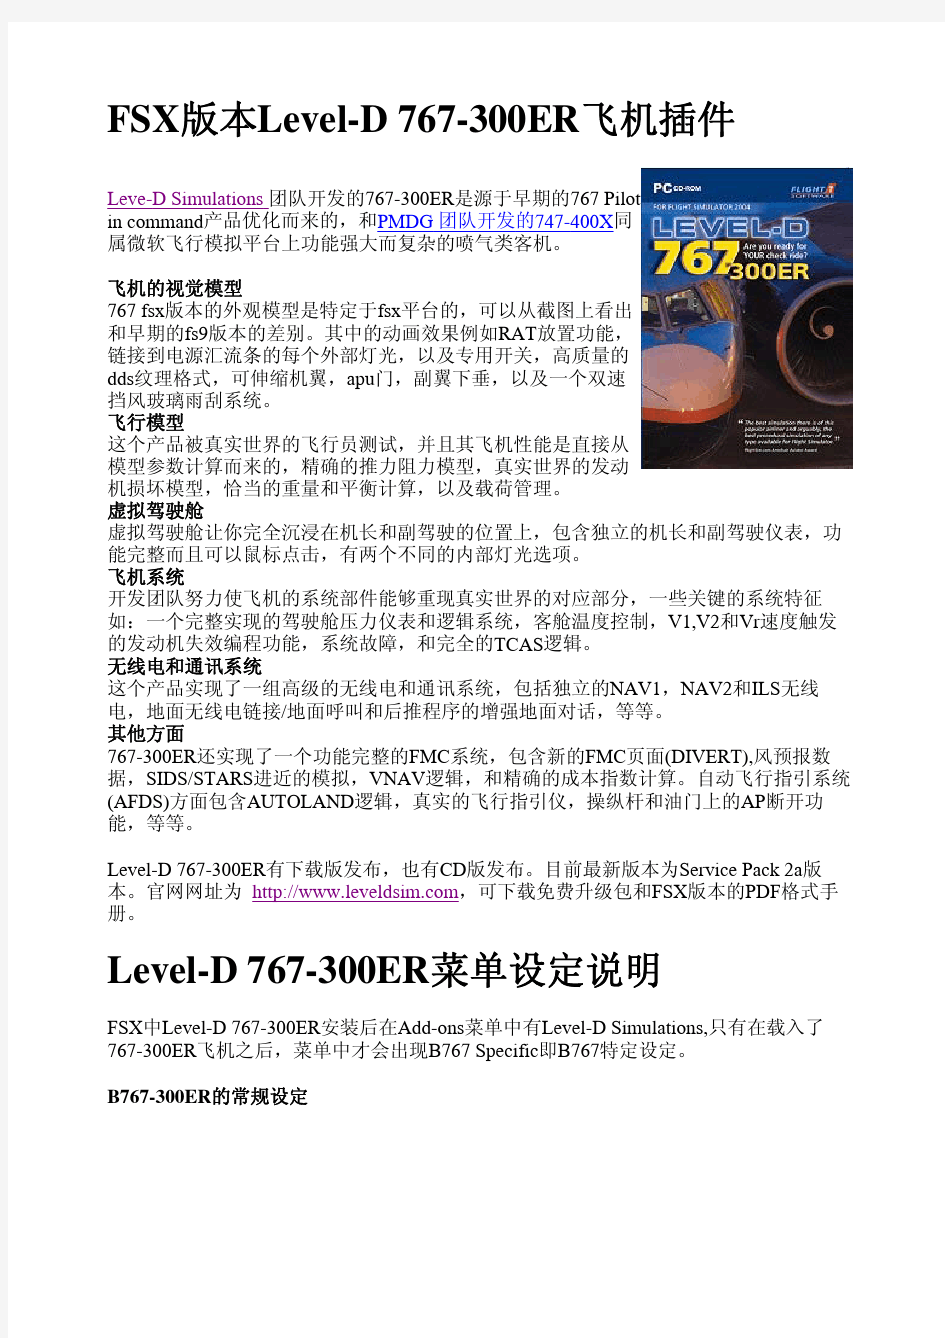 LD767中文手册